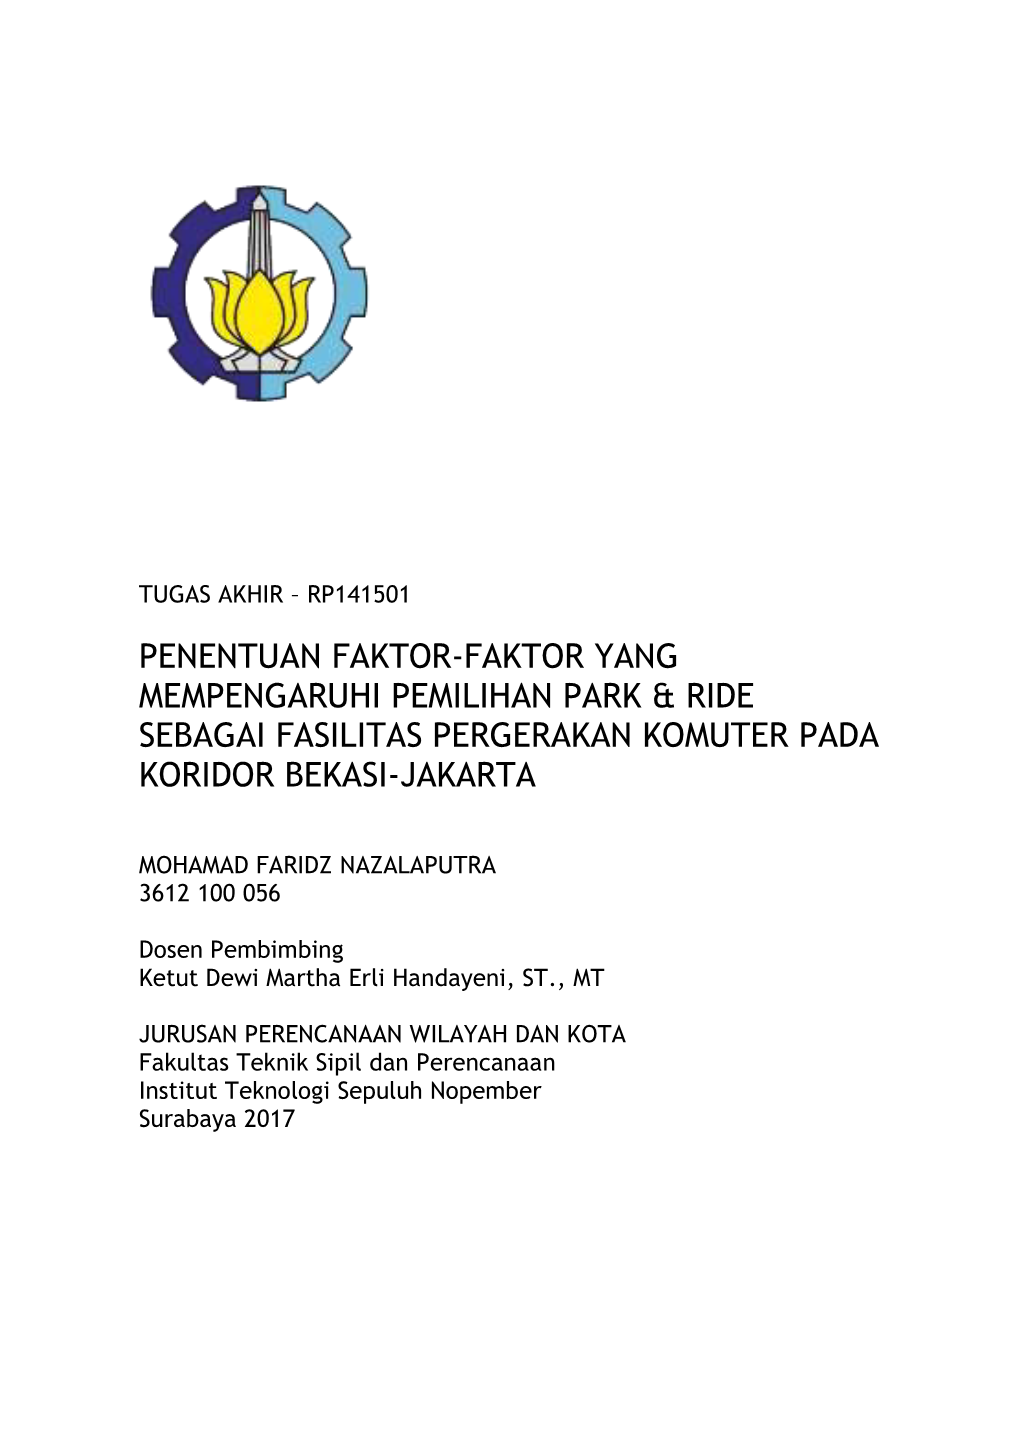 Penentuan Faktor-Faktor Yang Mempengaruhi Pemilihan Park & Ride Sebagai Fasilitas Pergerakan Komuter Pada Koridor Bekasi-Jakarta